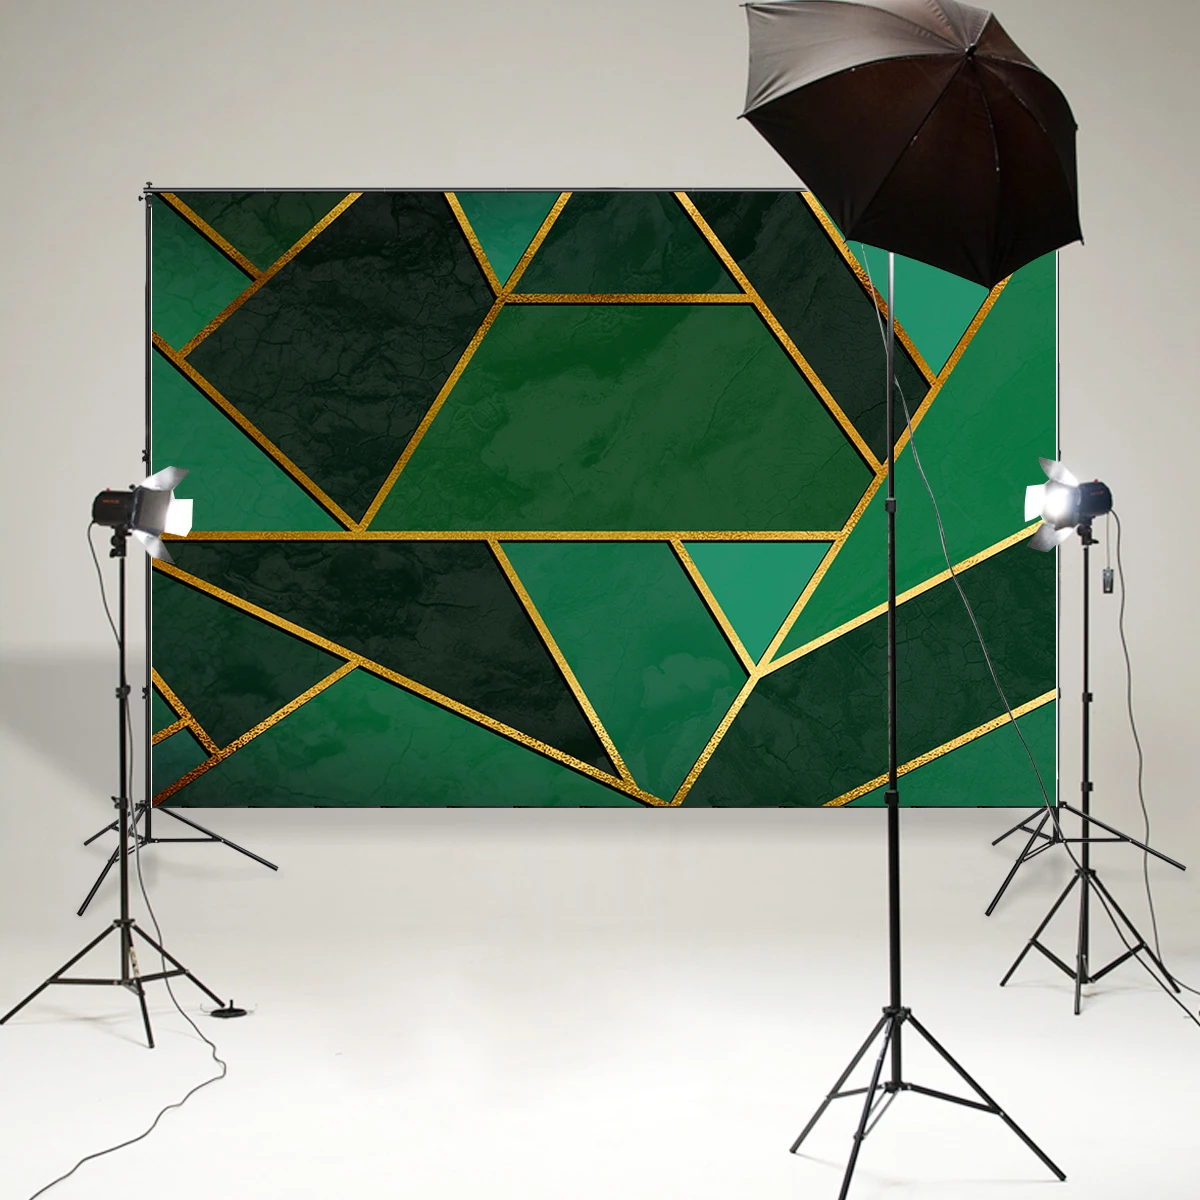 BEIPOTO Anotācija plakāts ar zelta līnijām un zaļo ģeometrisko modeli, fona fotogrāfija backdrops photo booth aksesuārus B-864